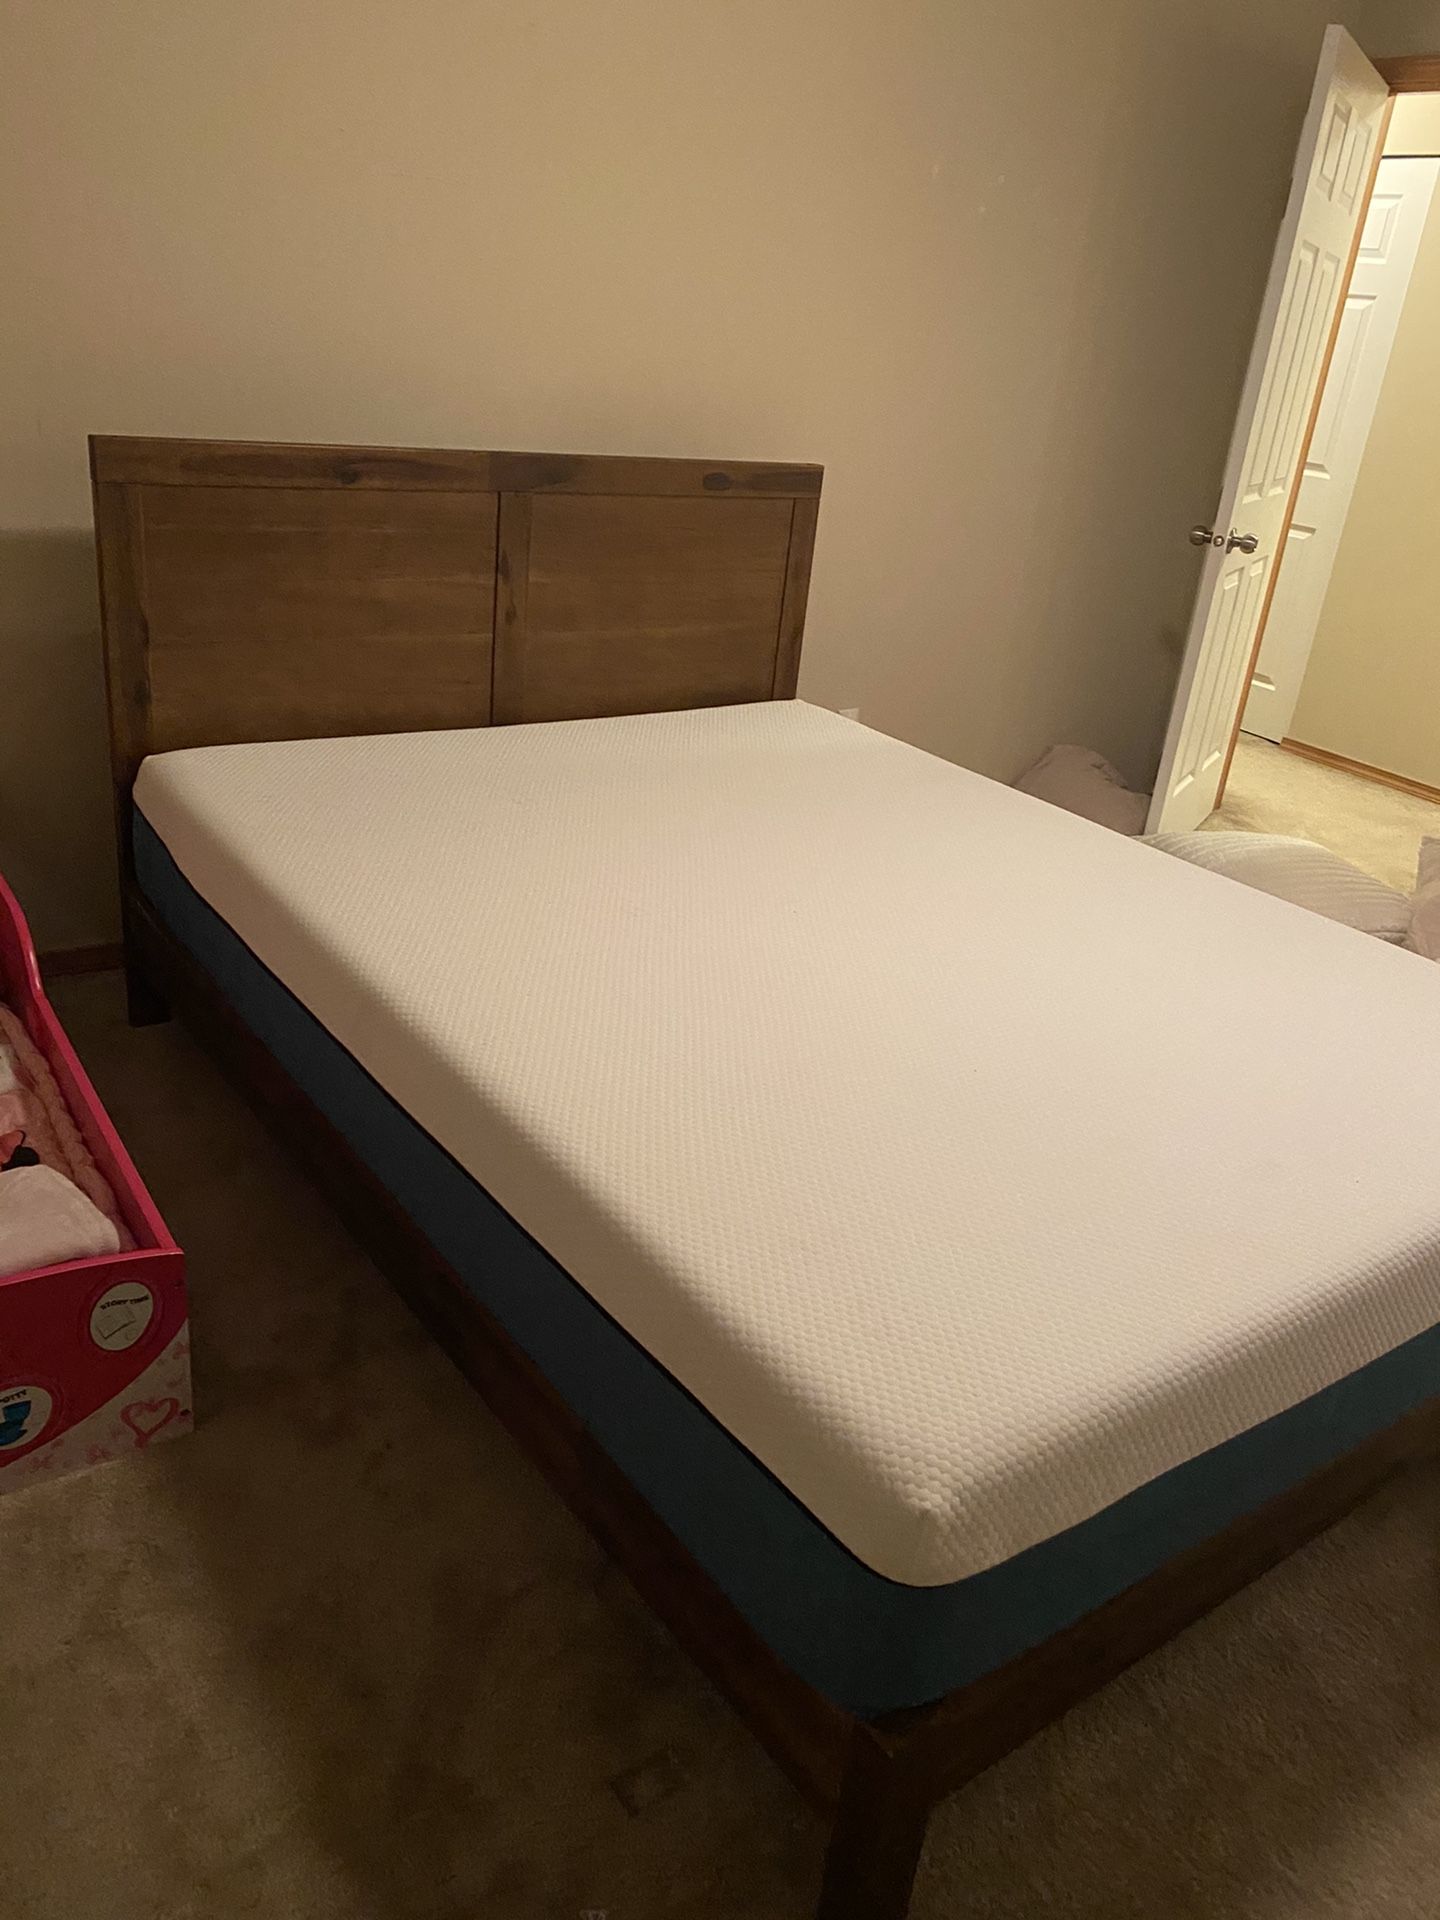 Queen wood platform bed frame and Queen foam mattress